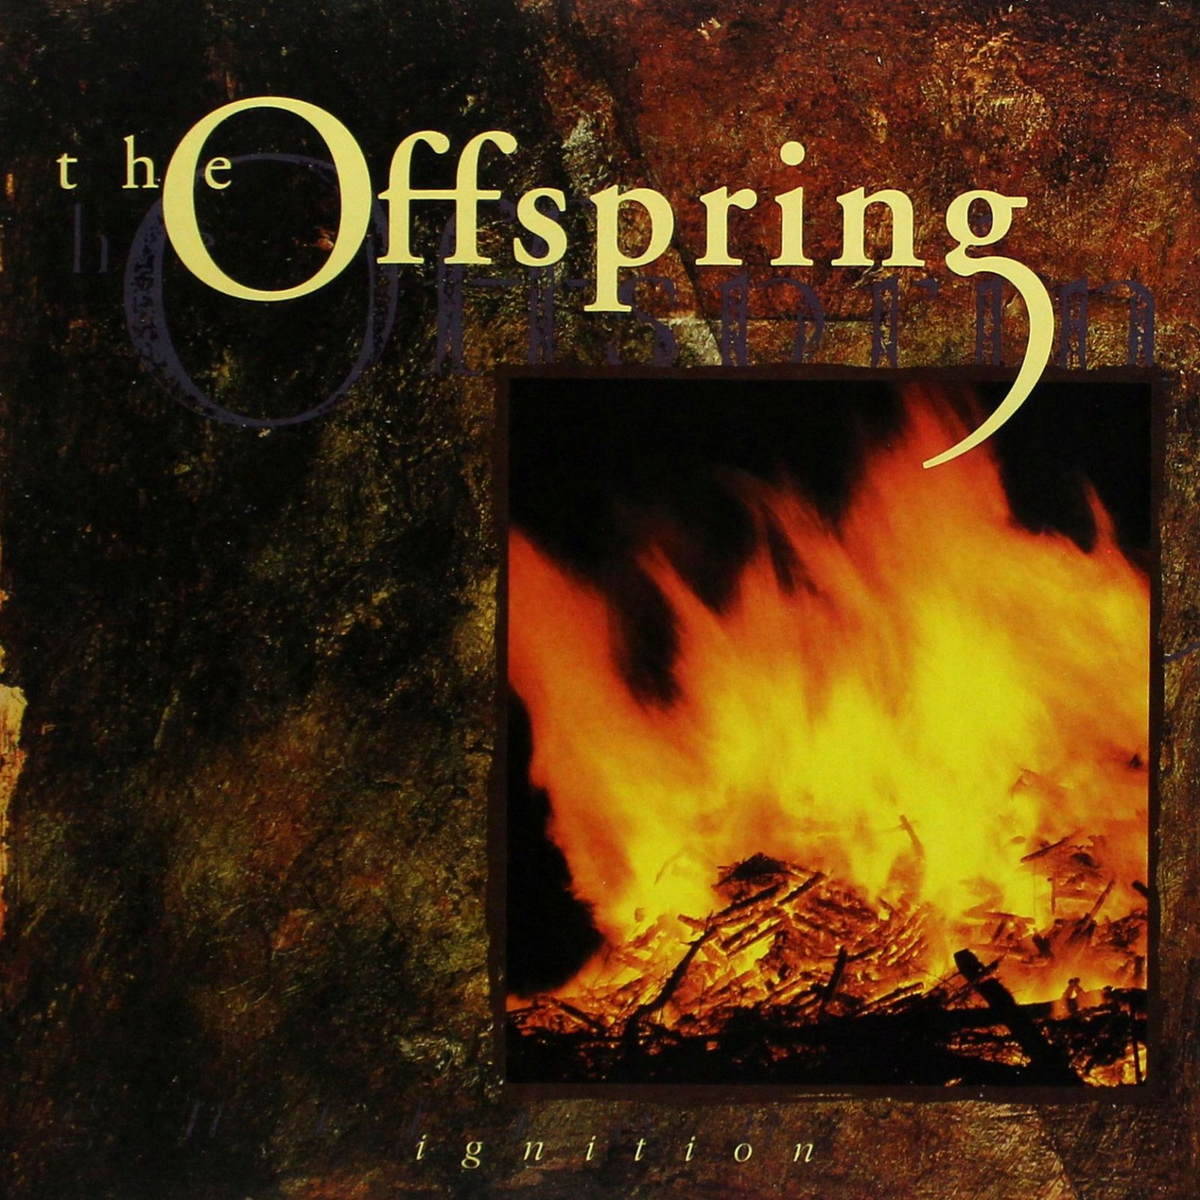 Виниловая пластинка Offspring, The, Ignition (8714092686715) винил the offspring americana виниловая пластинка переиздание студийного альбома панк рок группы the offspring